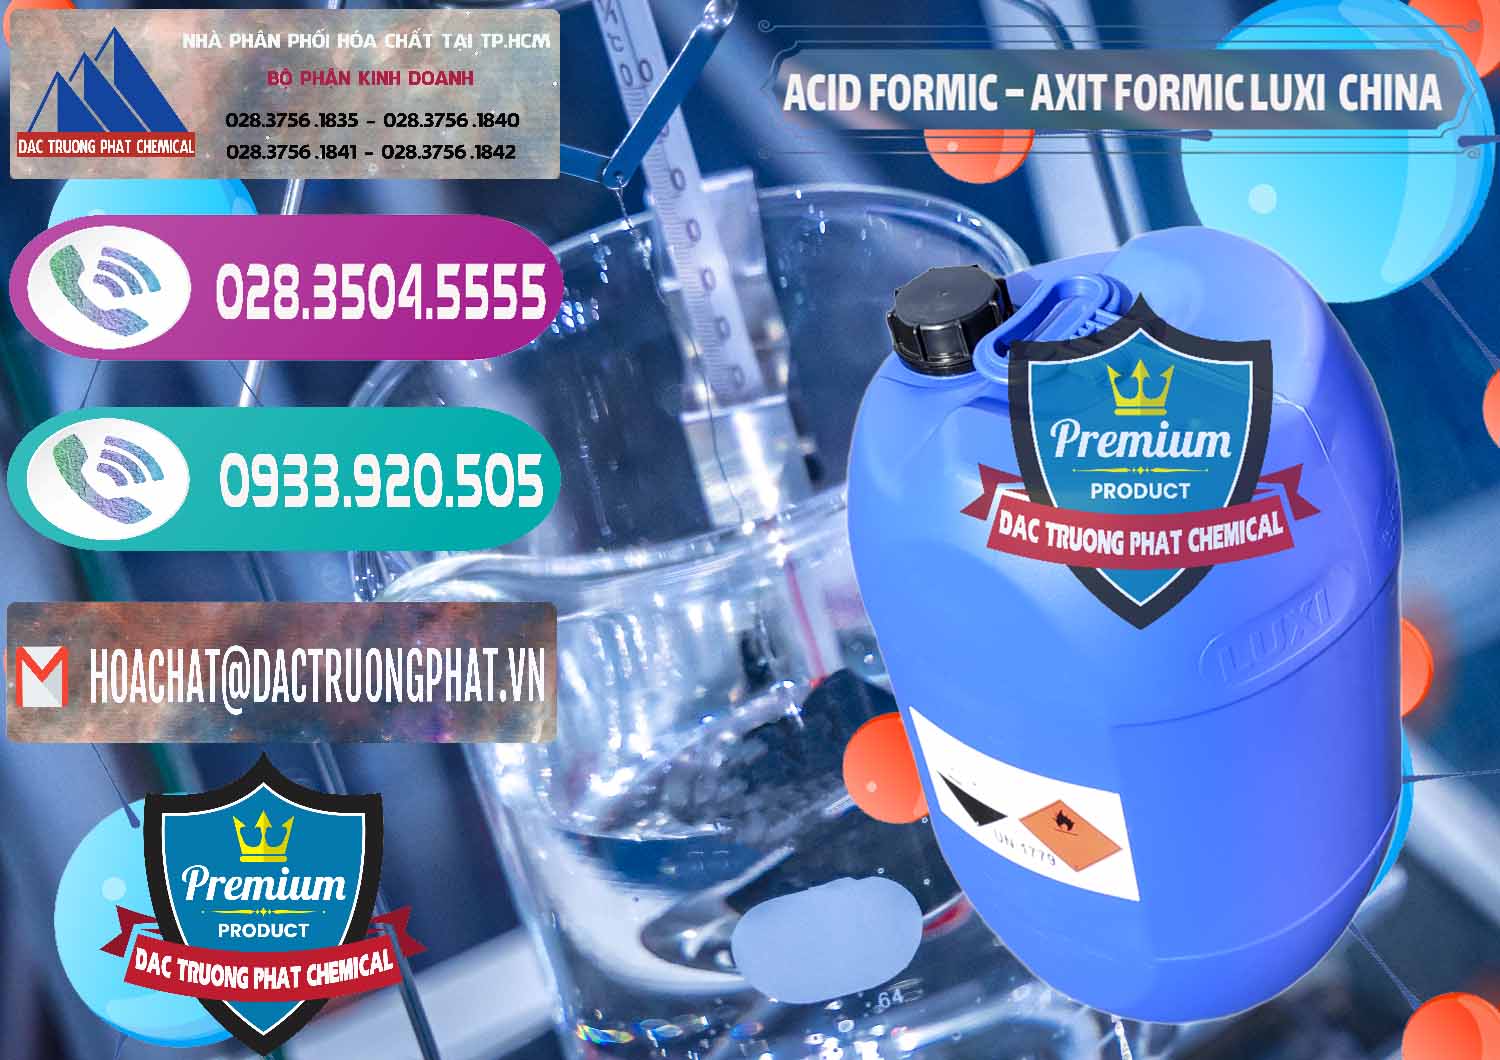 Phân phối - bán Acid Formic - Axit Formic Luxi Trung Quốc China - 0029 - Nơi cung cấp và phân phối hóa chất tại TP.HCM - hoachatxulynuoc.com